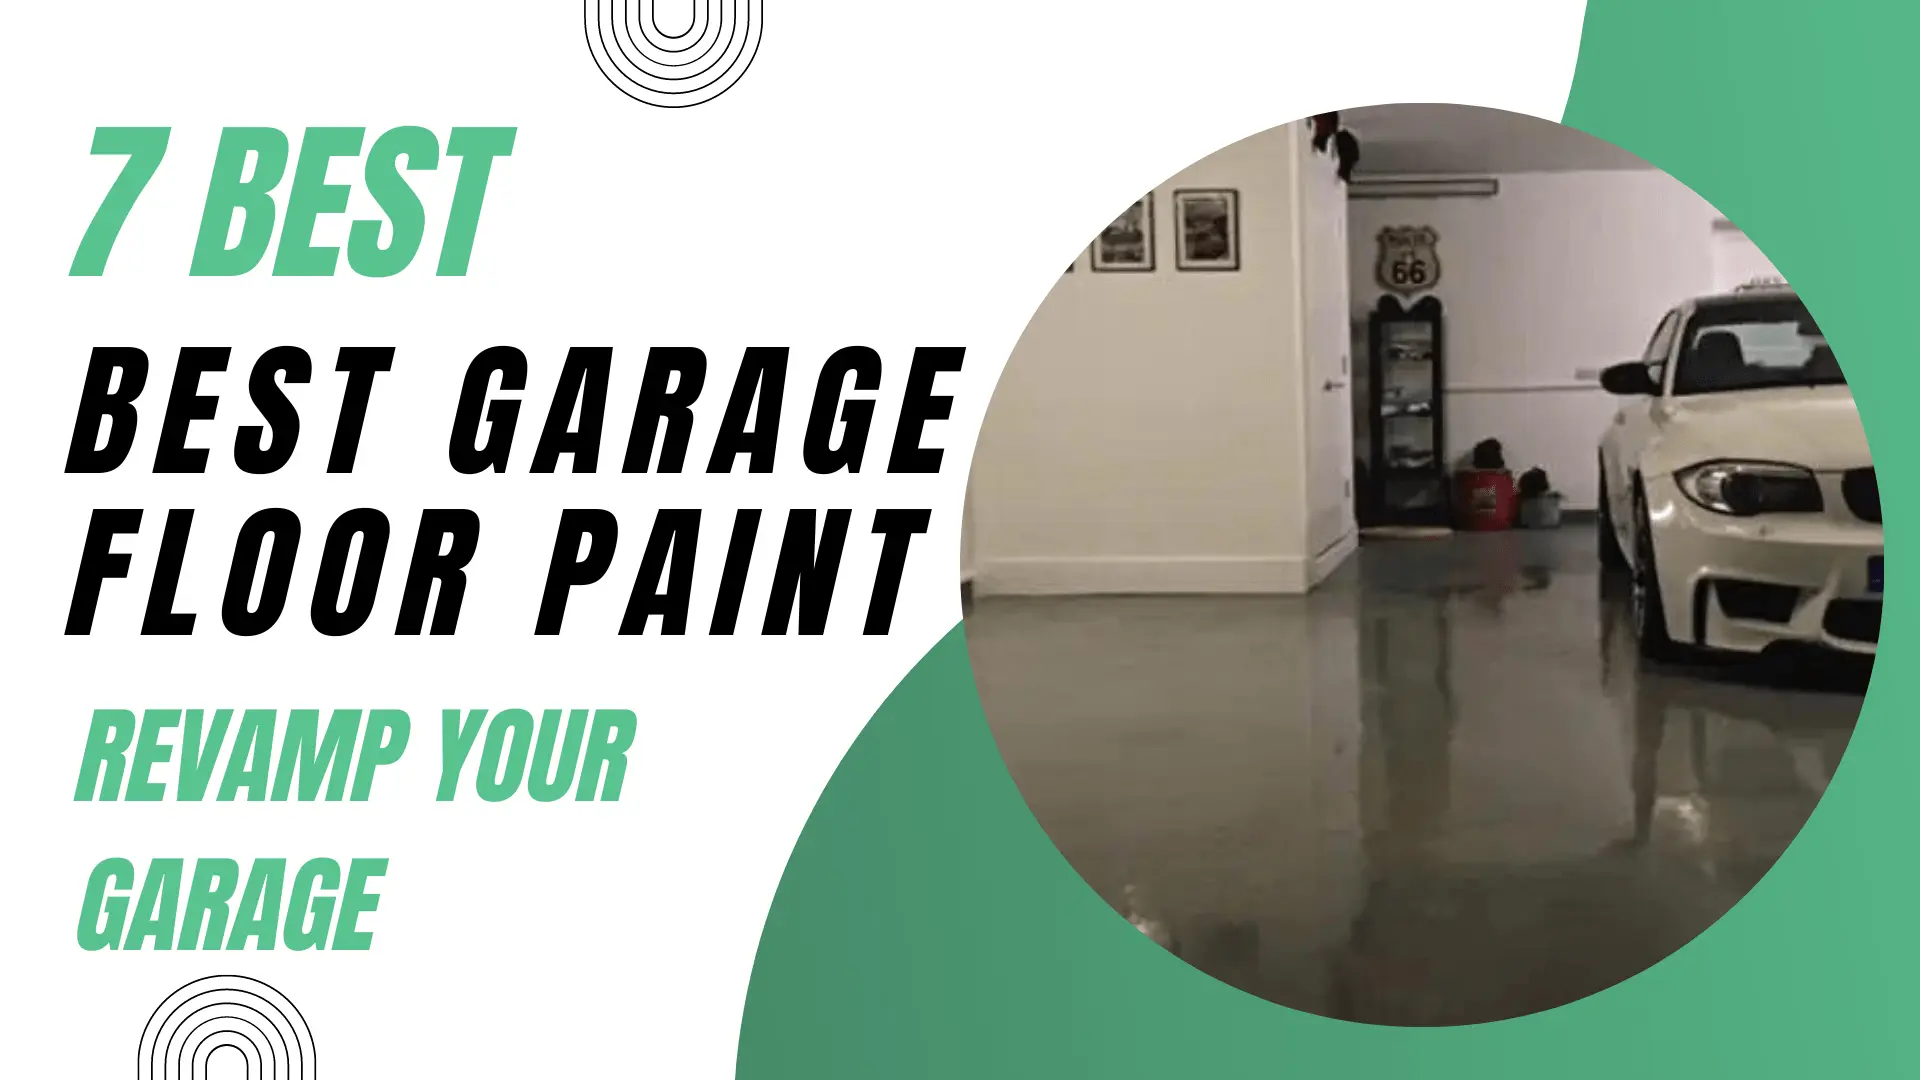 7 Best Garage Floor Paint For 2023 Revamp Your Garage.webp